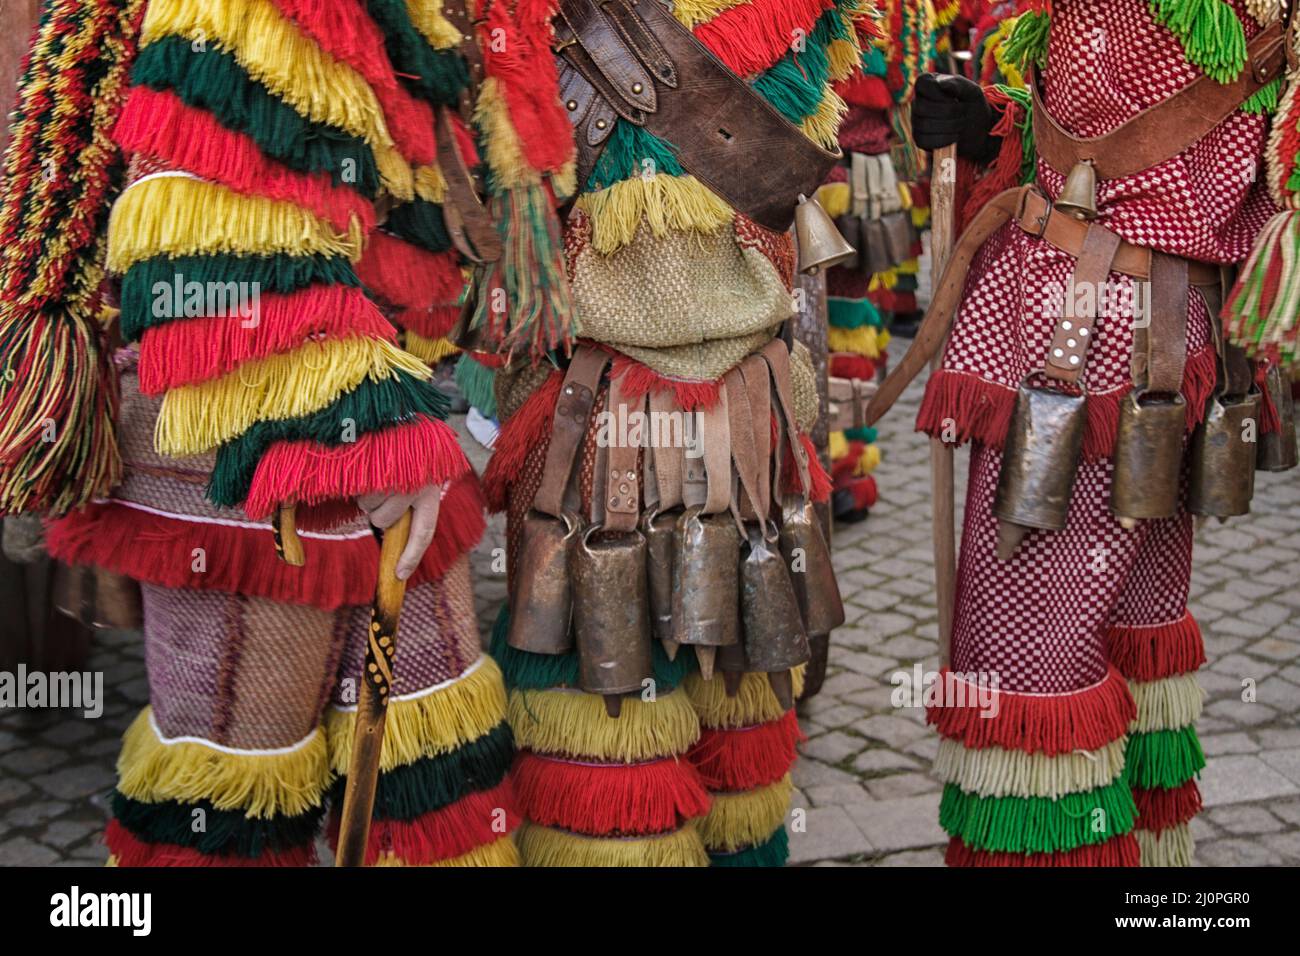 Los caretos - personajes tradicionales de Podence, Cerca de su traje y campanas, Portugal Foto de stock